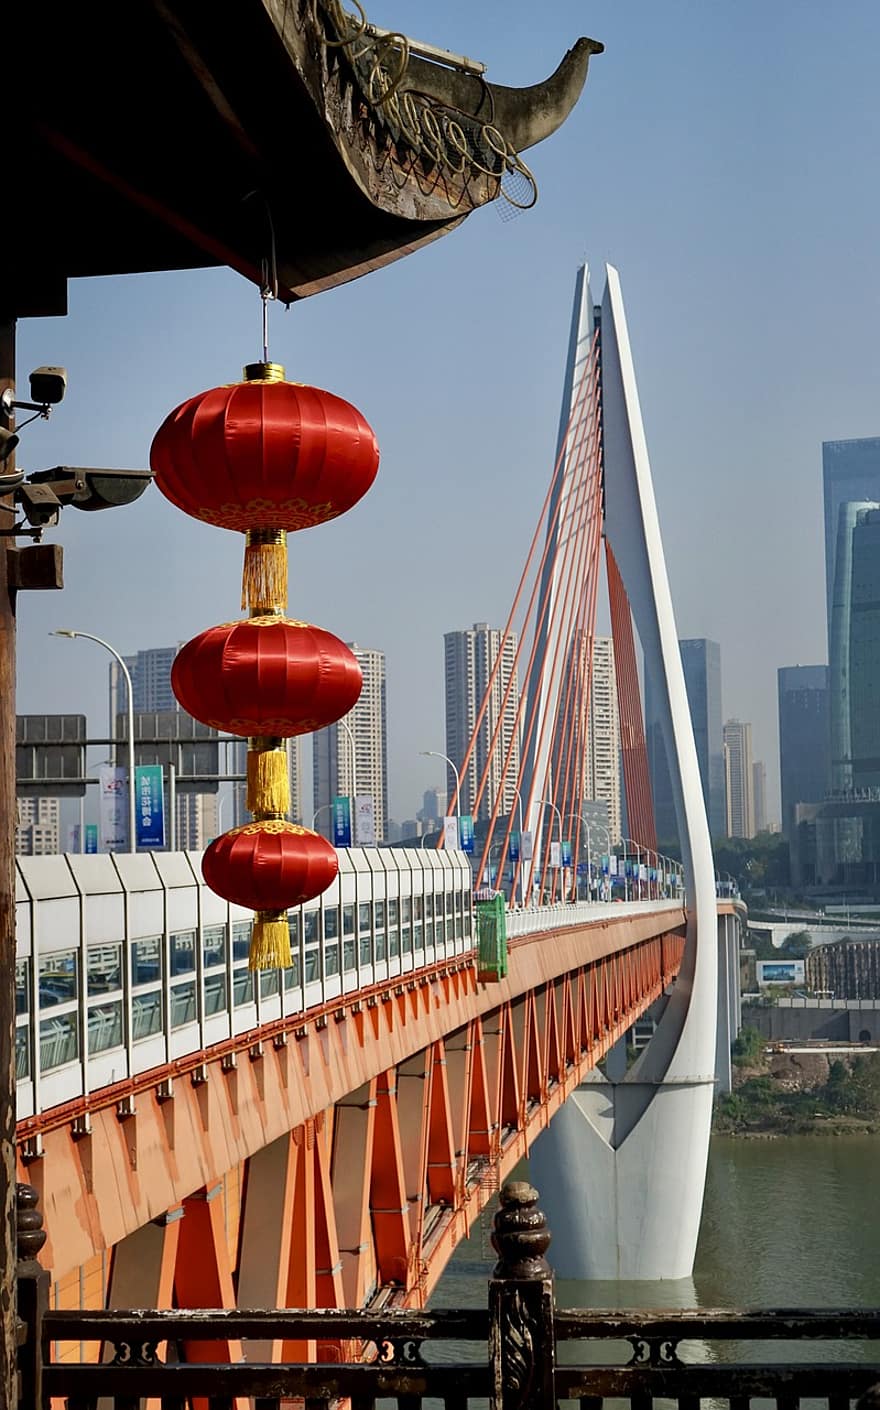 Asia, călătorie, turism, Podul Qiansimen, loc faimos, arhitectură, pod, peisaj urban, transport, construită, zgârie-nori